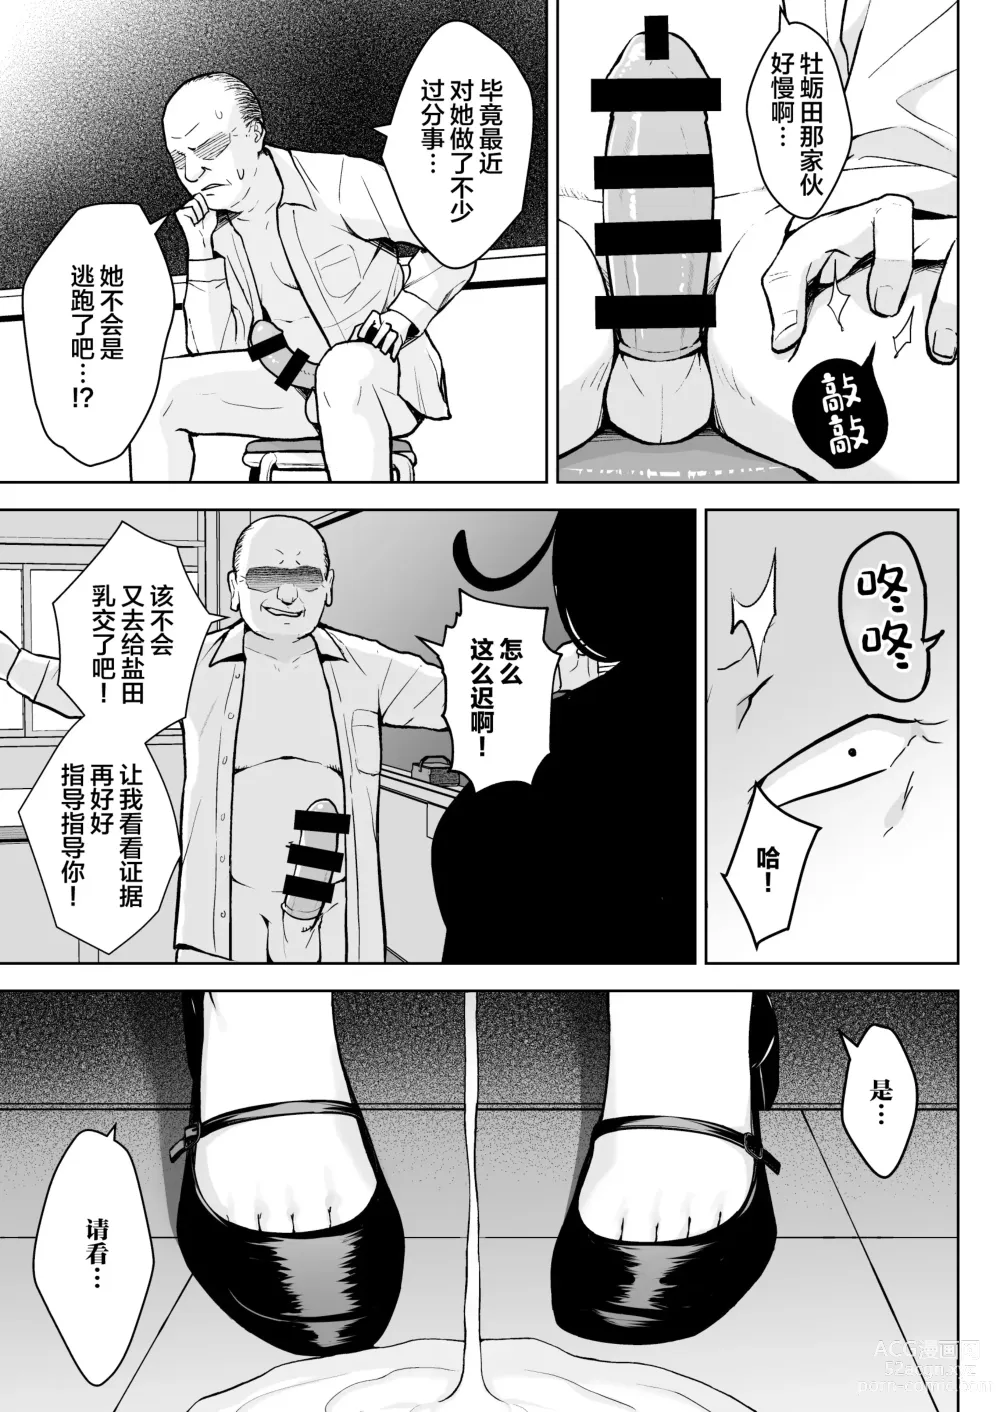 Page 32 of doujinshi 1-nen Ikagumi Kakitare Sensei